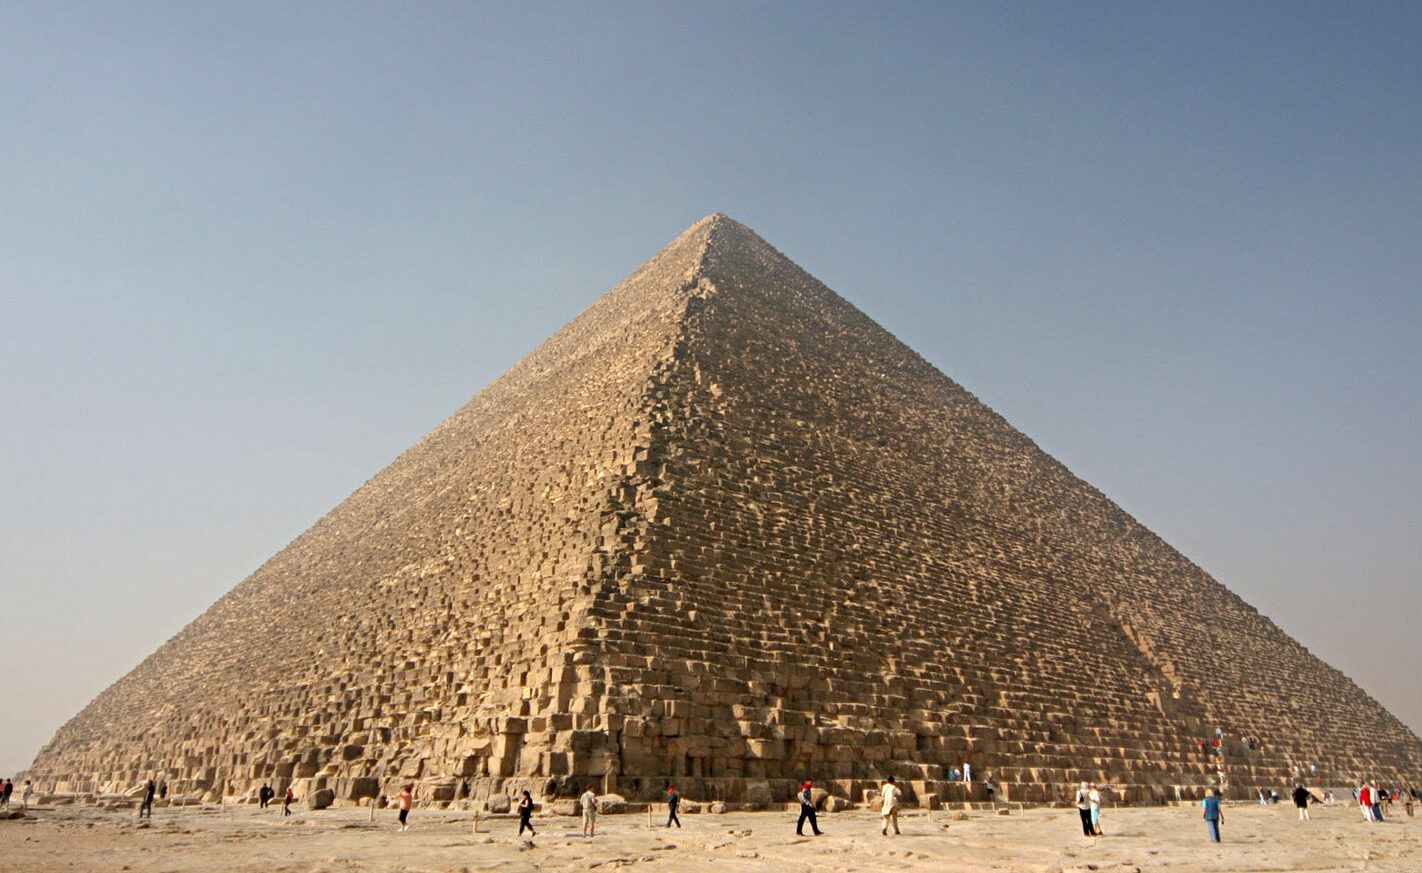 La Gran Pirámide de Keops: Monumento emblemático de la antigua civilización egipcia